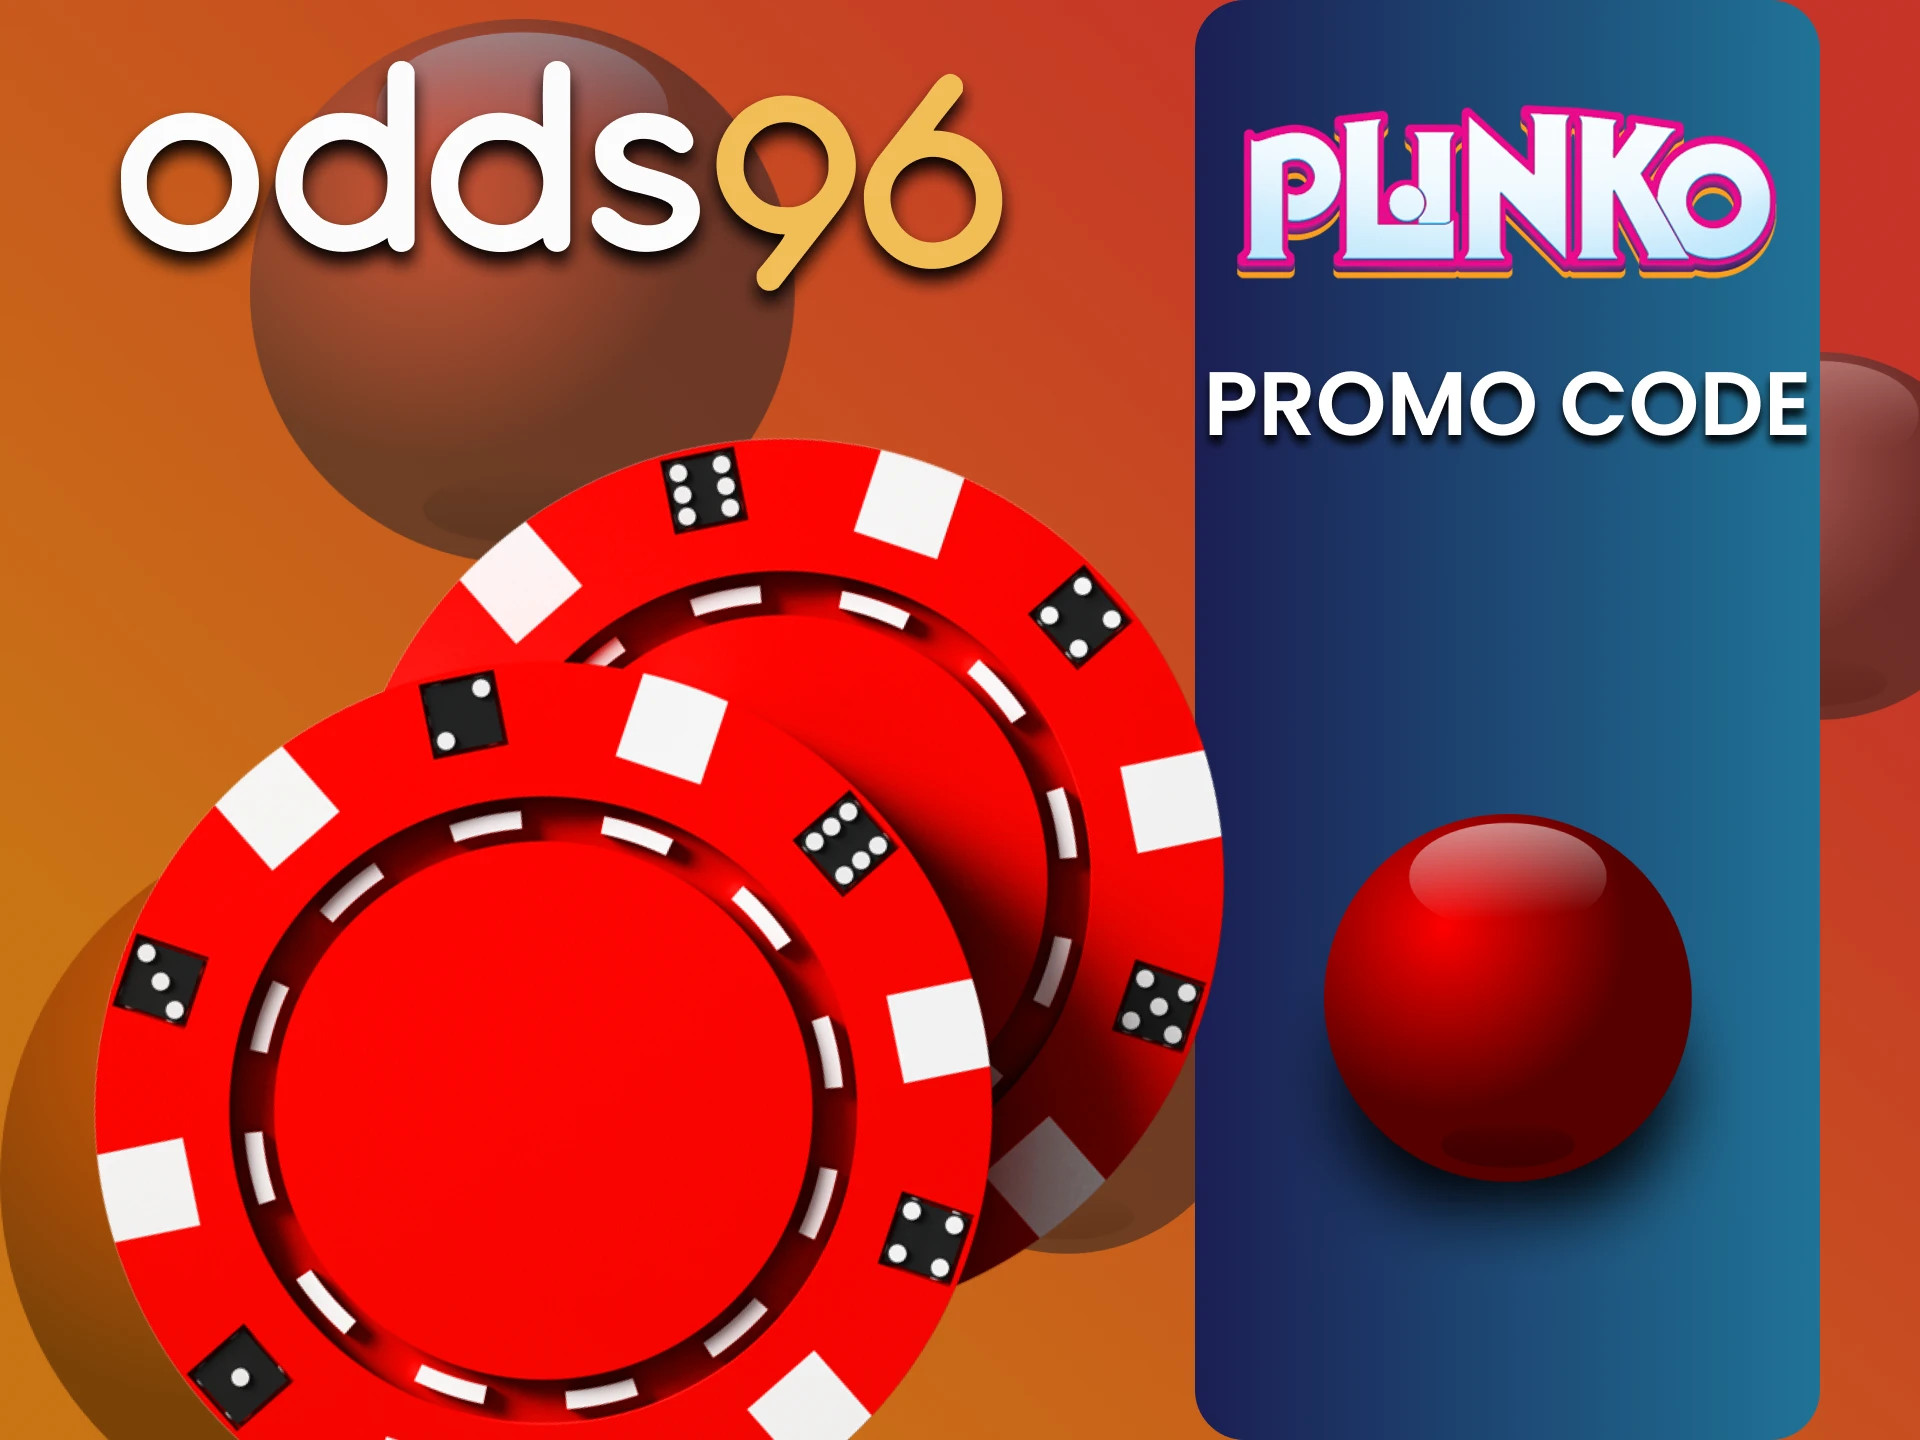 Enter bonus code from odds96 for Plinko.